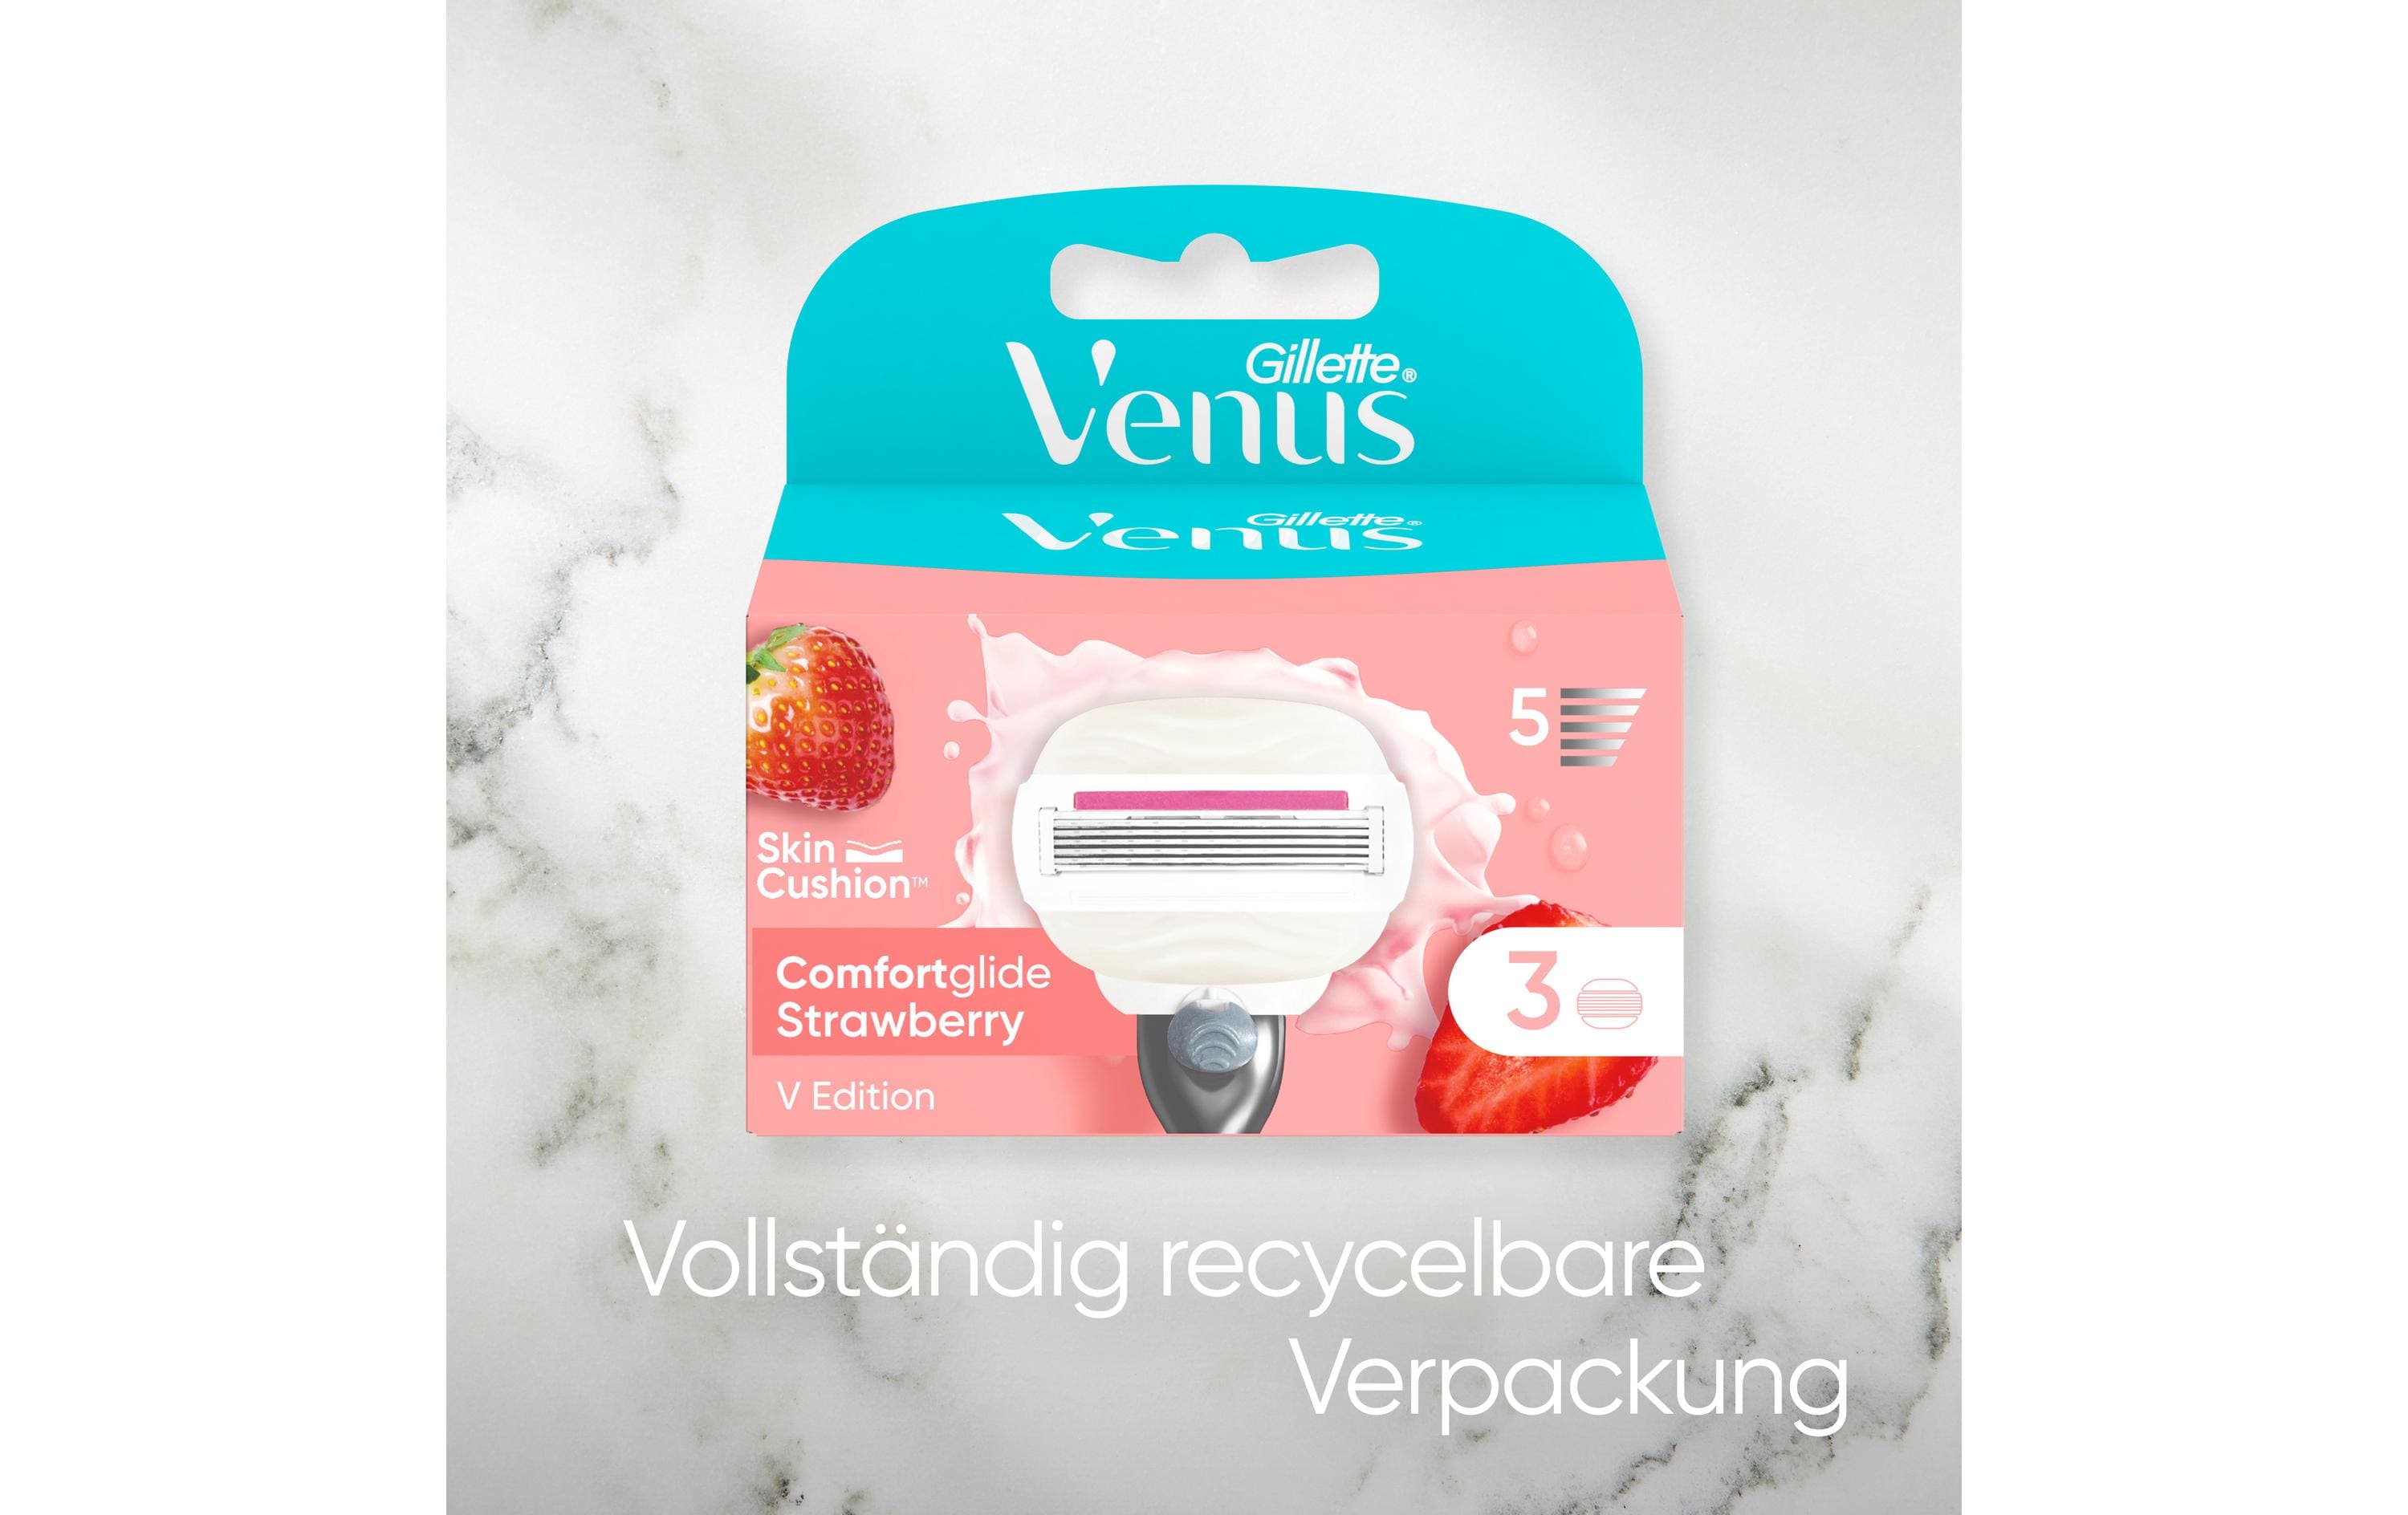 Gillette Venus Rasierklingen Comfortglide Strawberry Scent 4 Stück